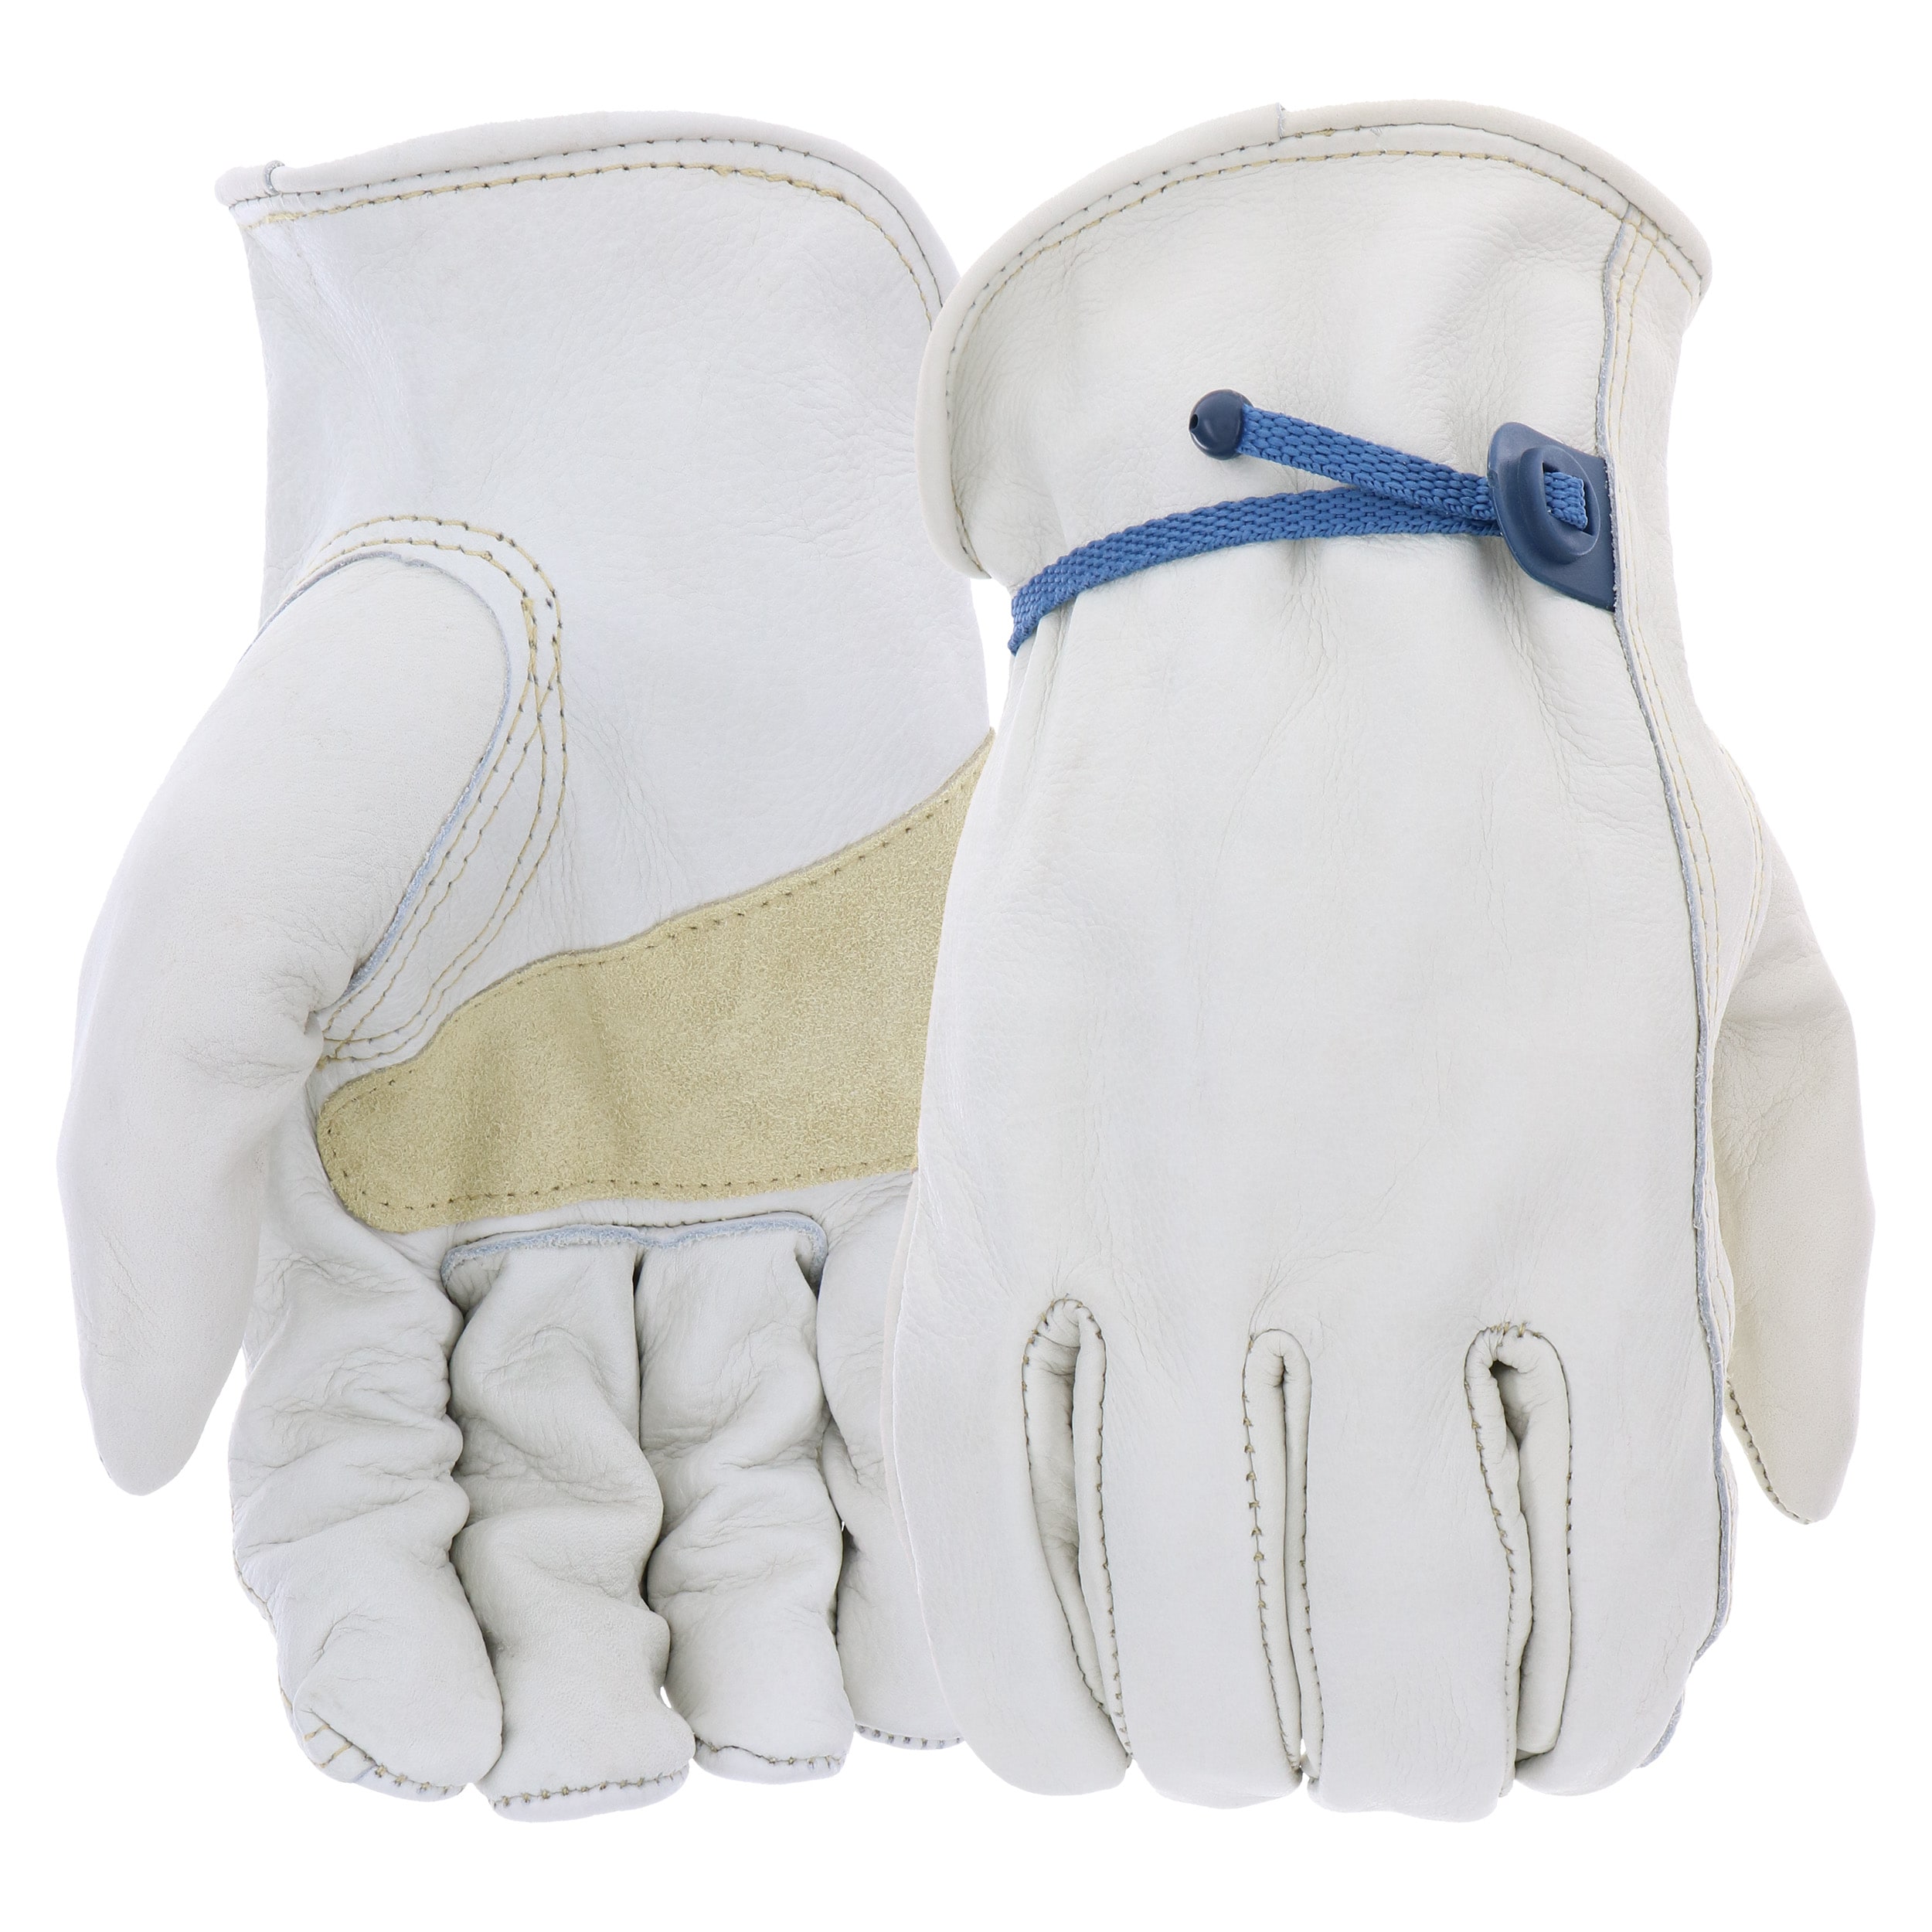 Glove Hooks: Strap Hooks For Gloves, Vests, Furniture or Bed